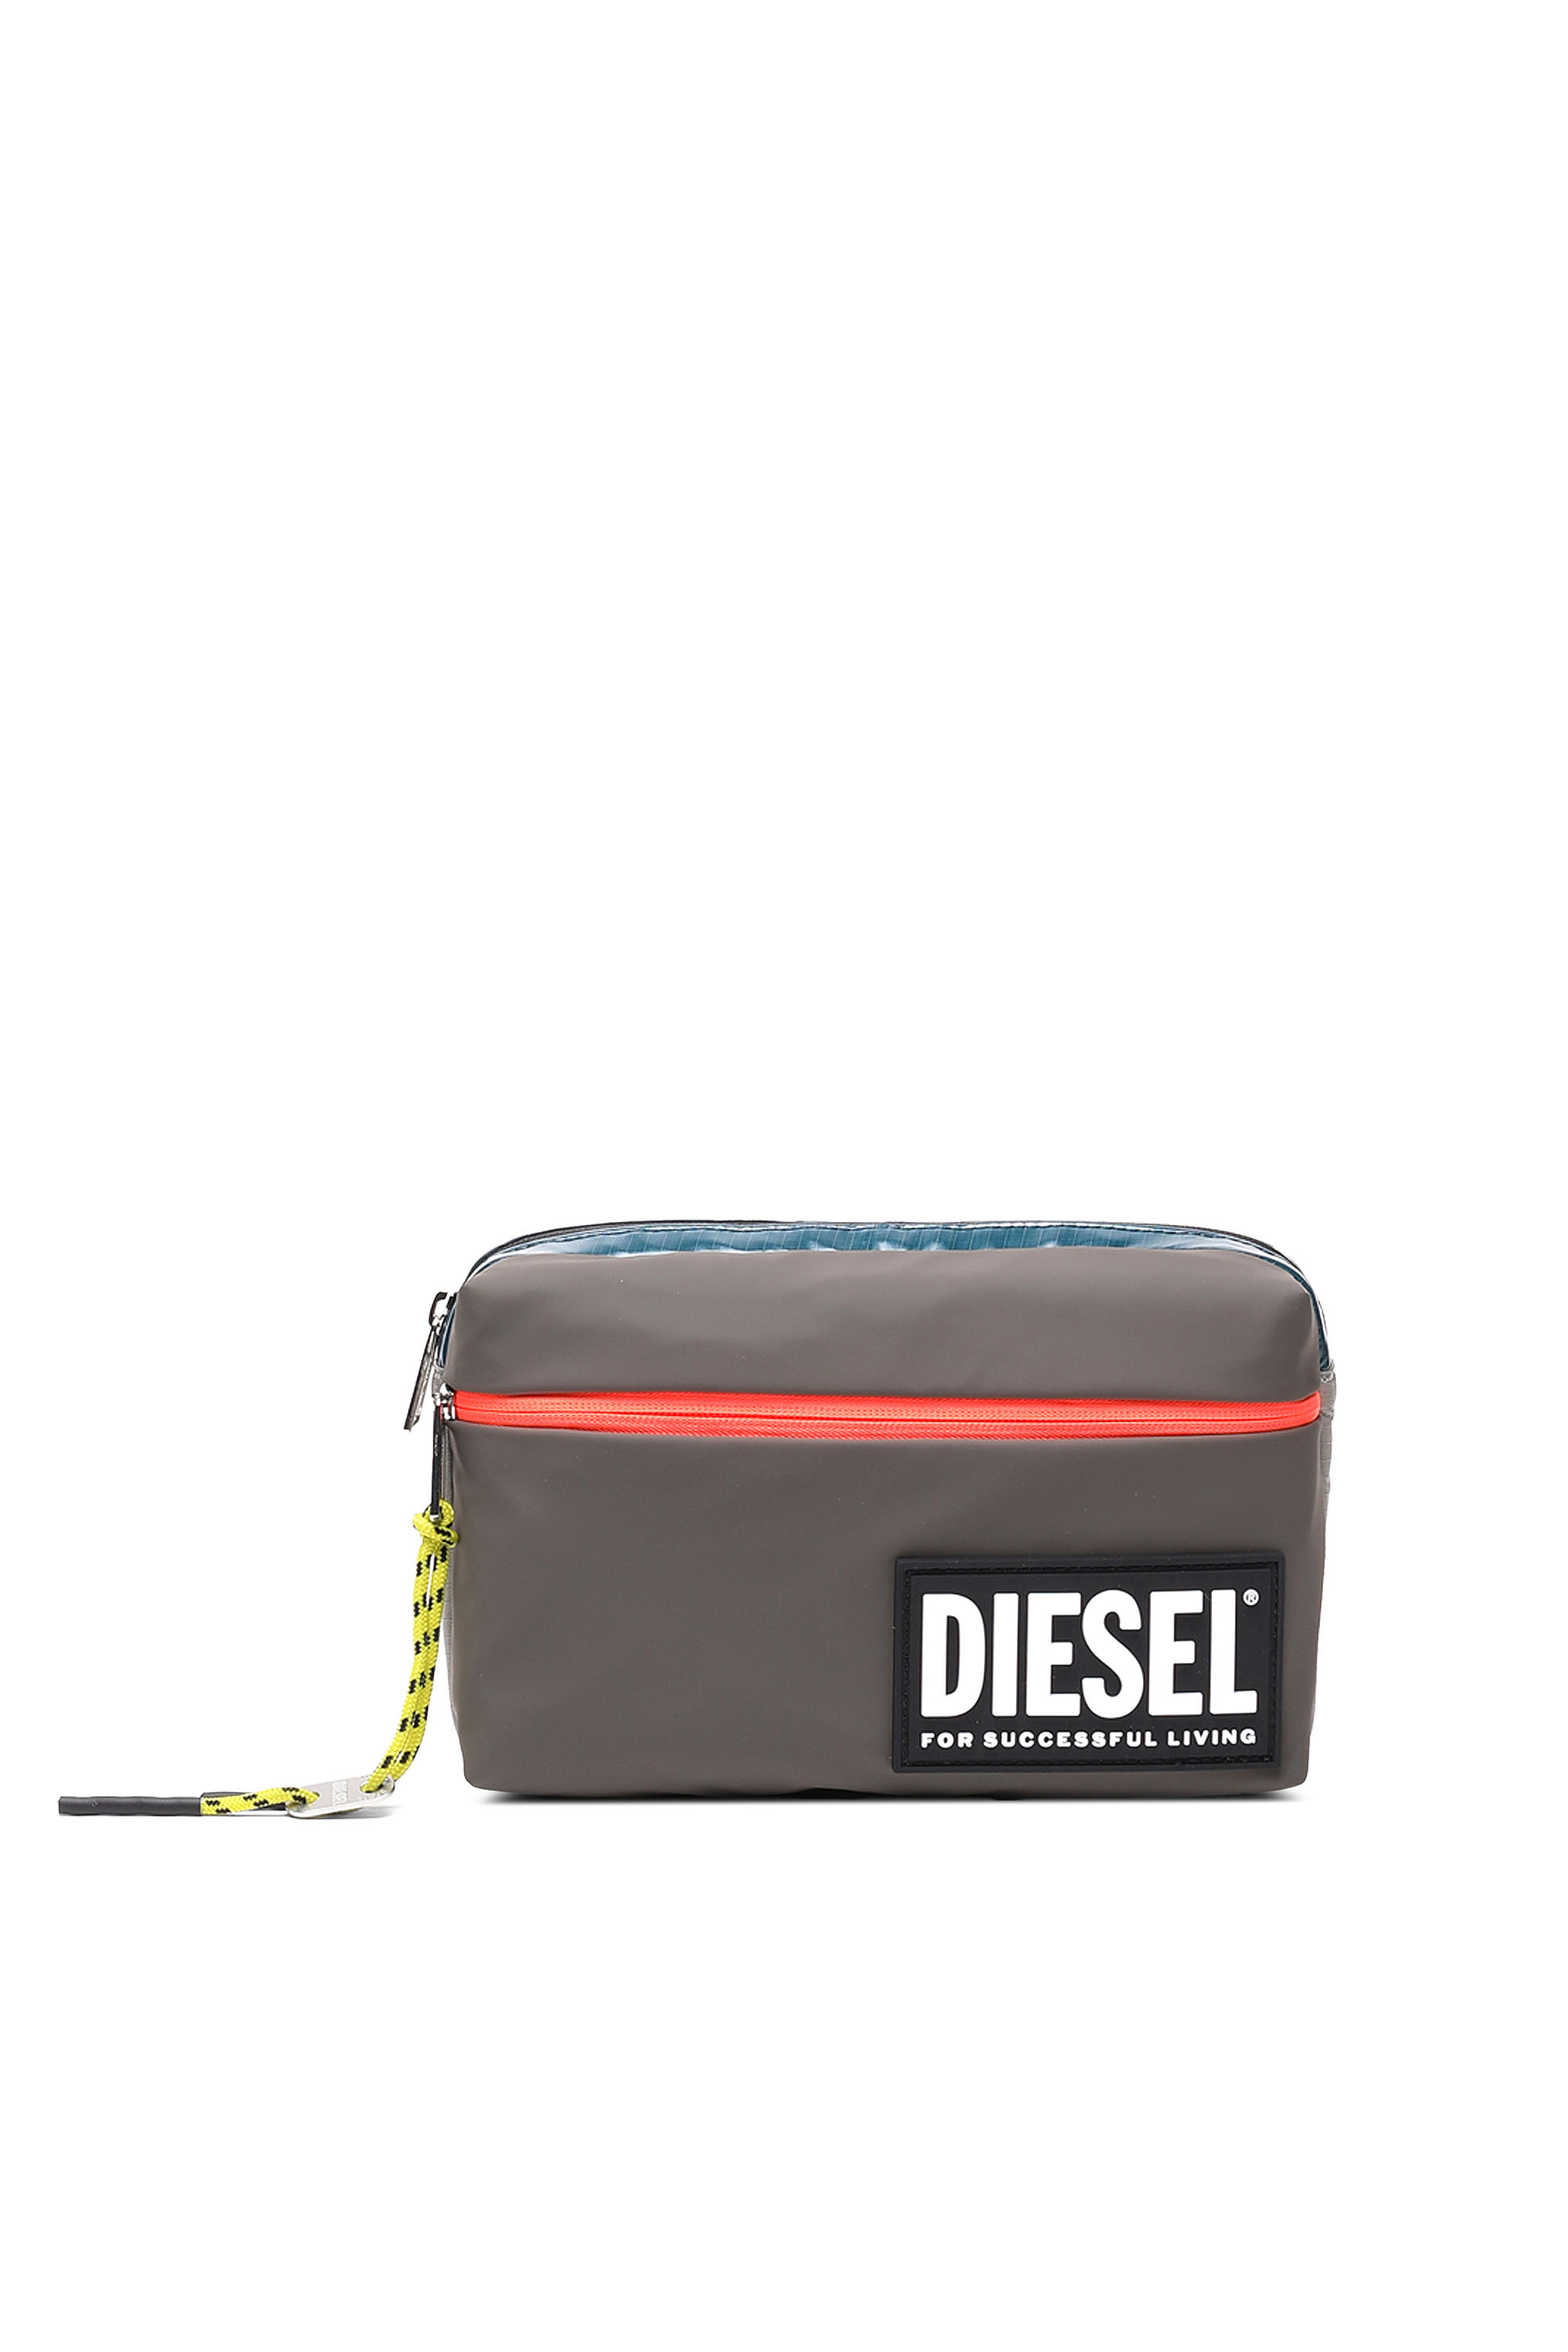 Diesel - BELTYO, Marron - Image 1